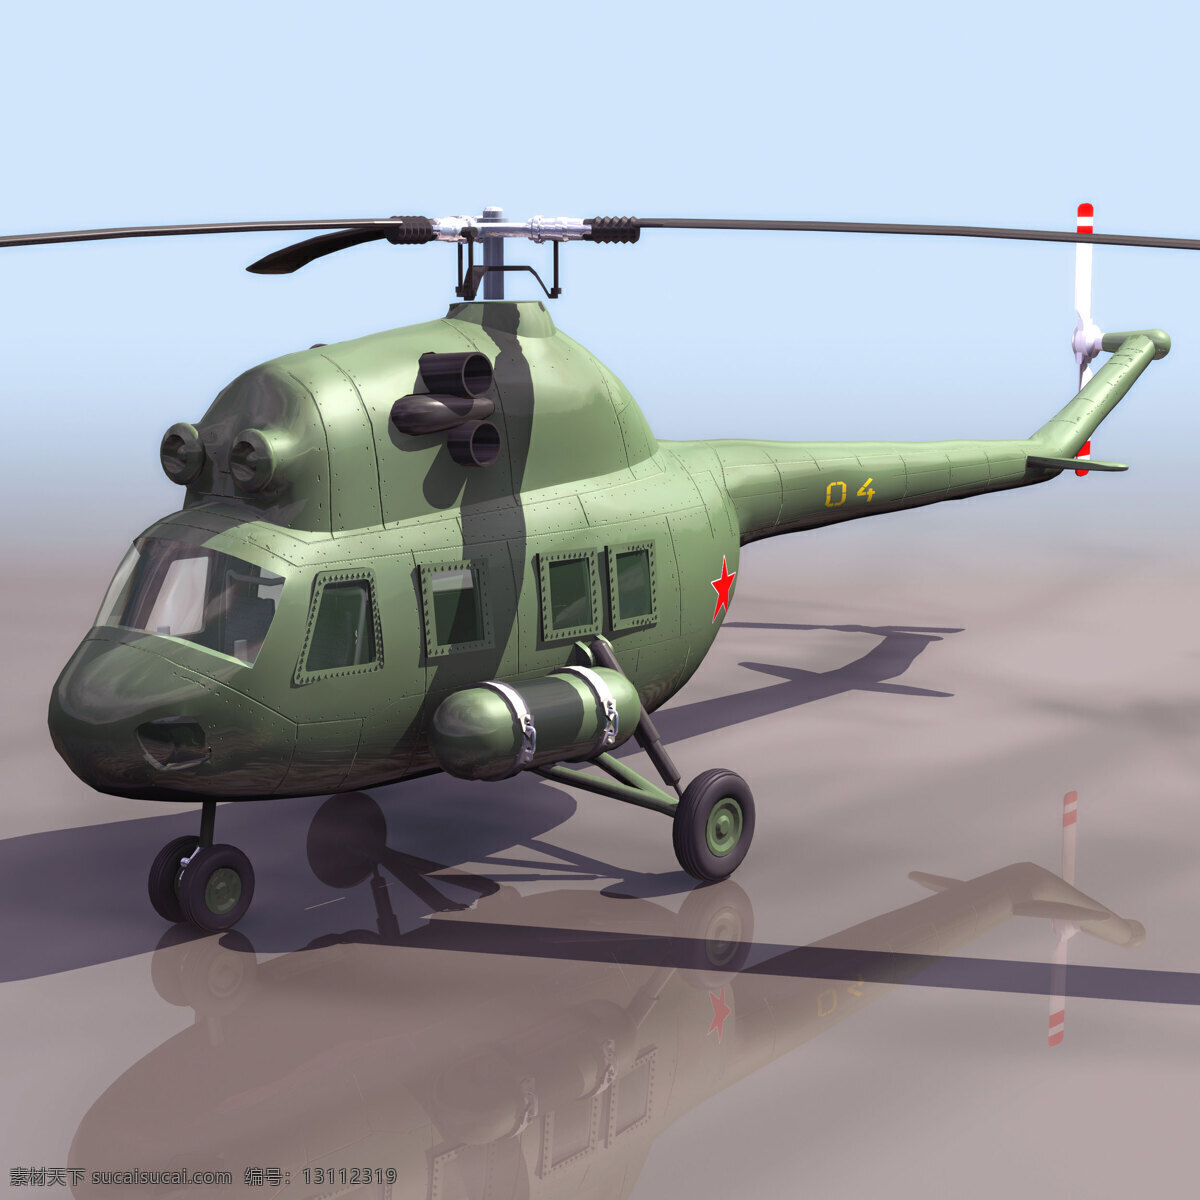 米尔 直升机 模型 带 贴图 军事模型 空军武器库 3d模型素材 其他3d模型